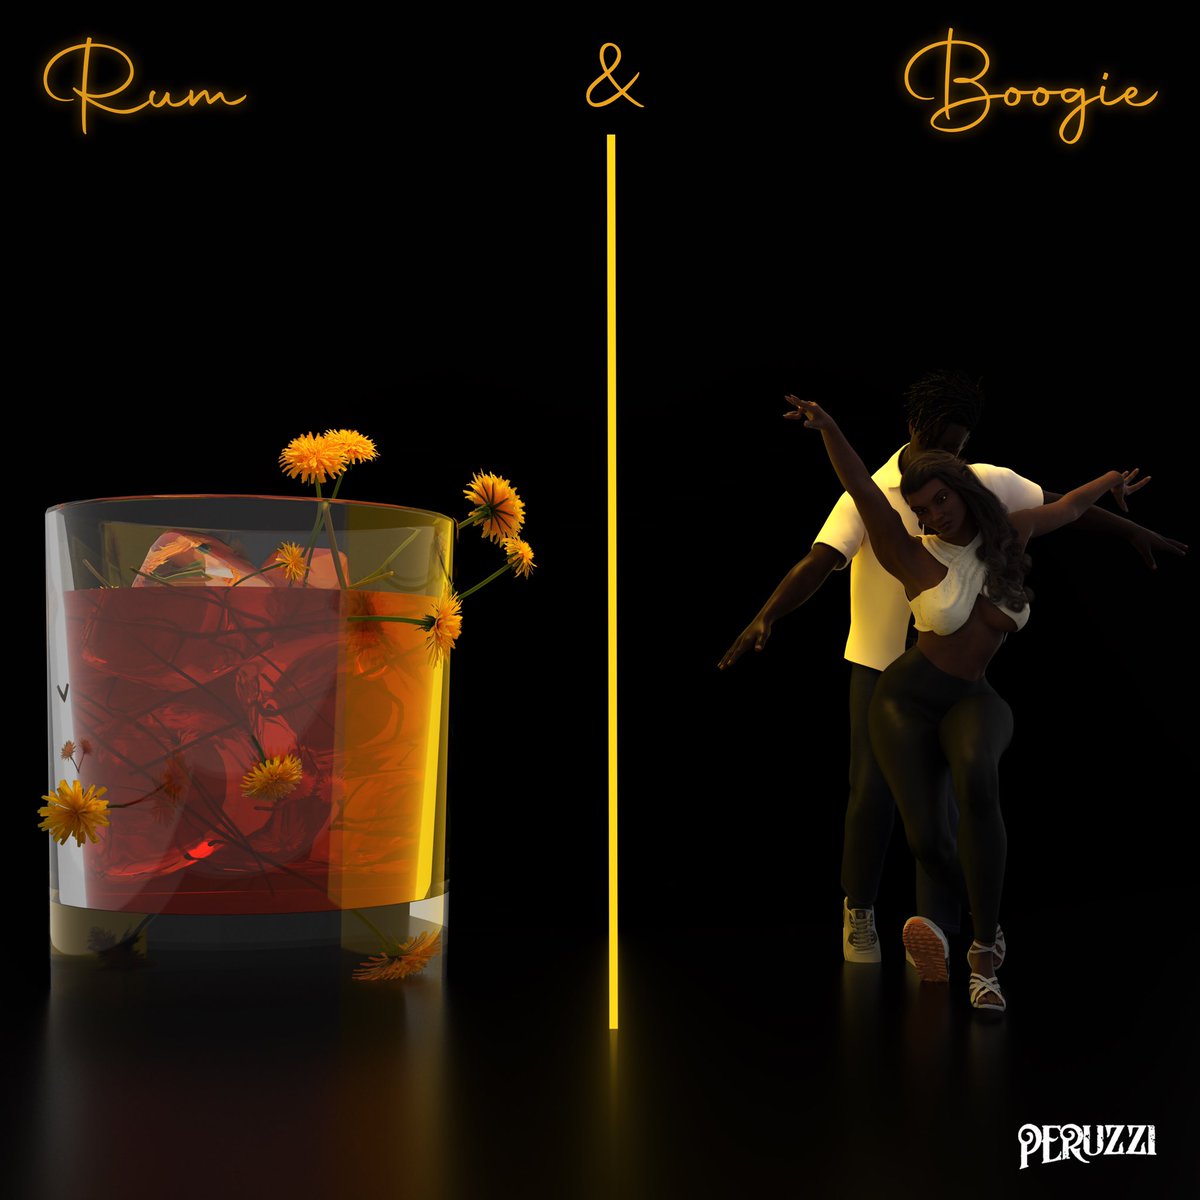 PERUZZI Rum & Boogie Album Cover